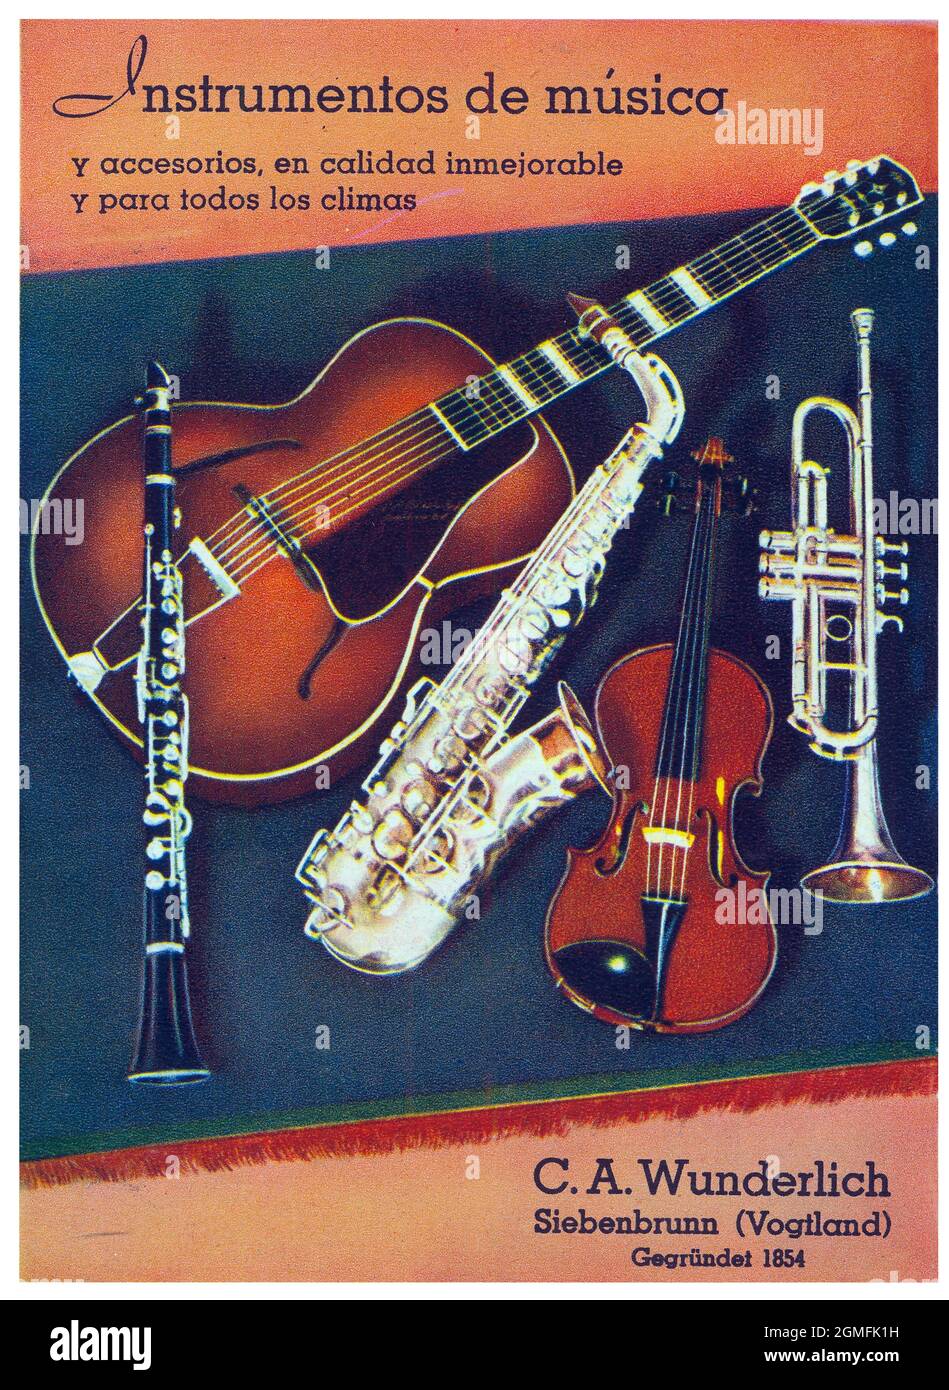 Publicidad. Instrumentos de Música C. A. Wunderlich. Alemania, año 1943. Stockfoto